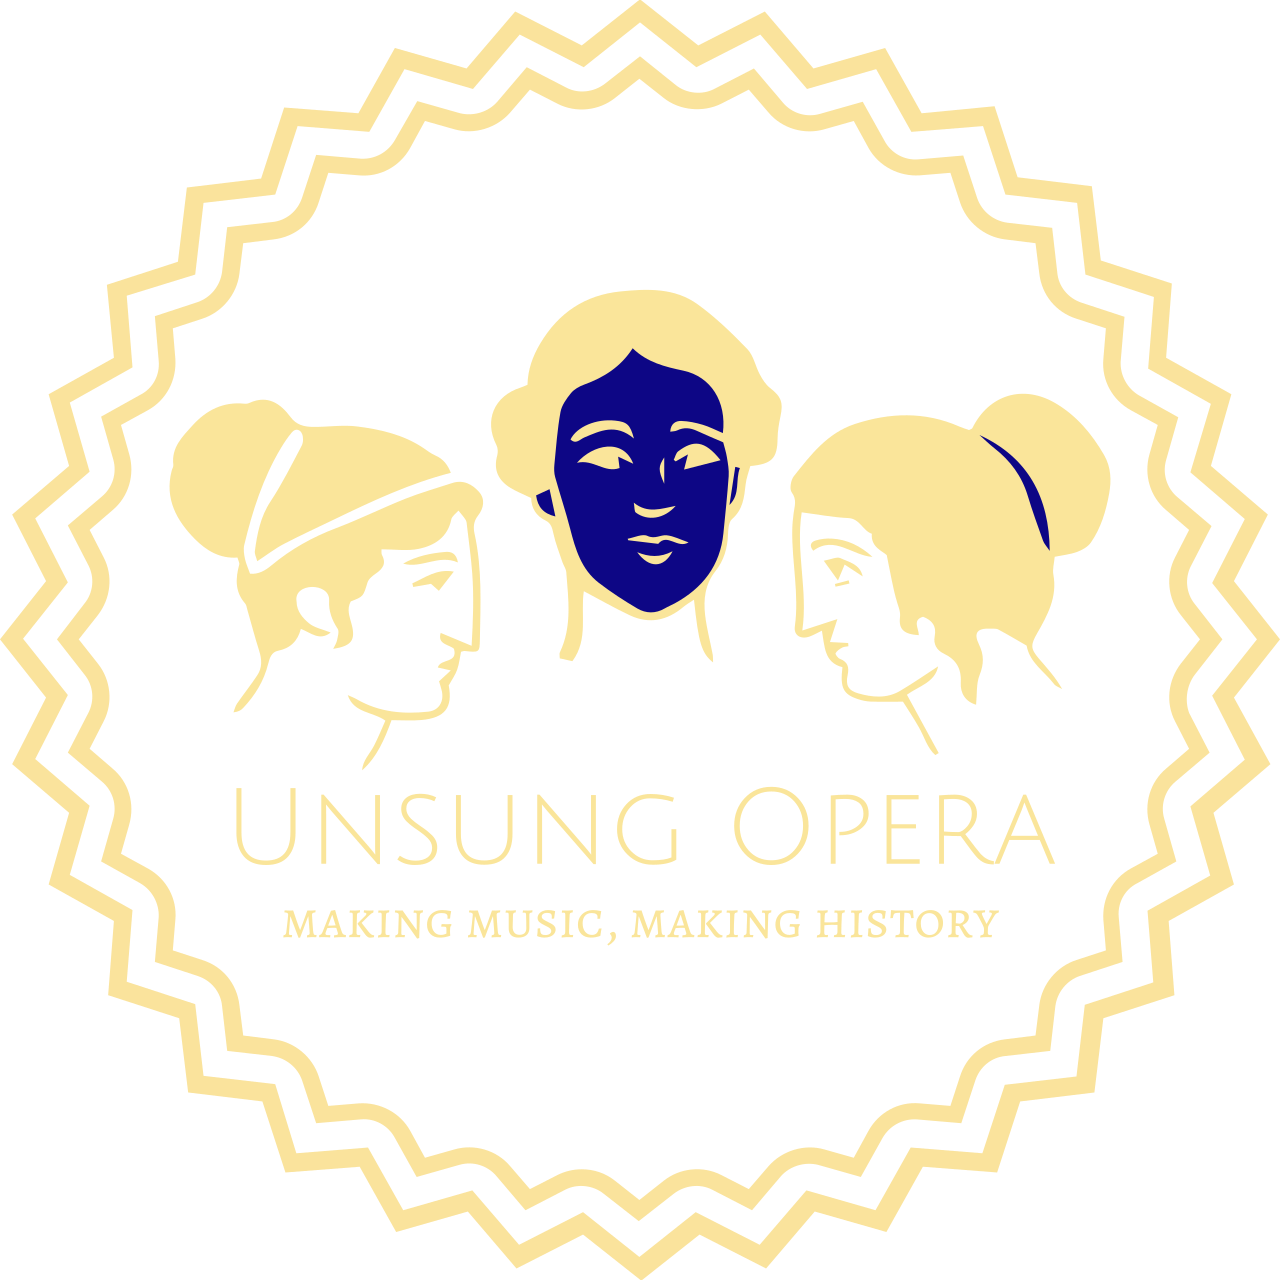 Unsung Opera's web page